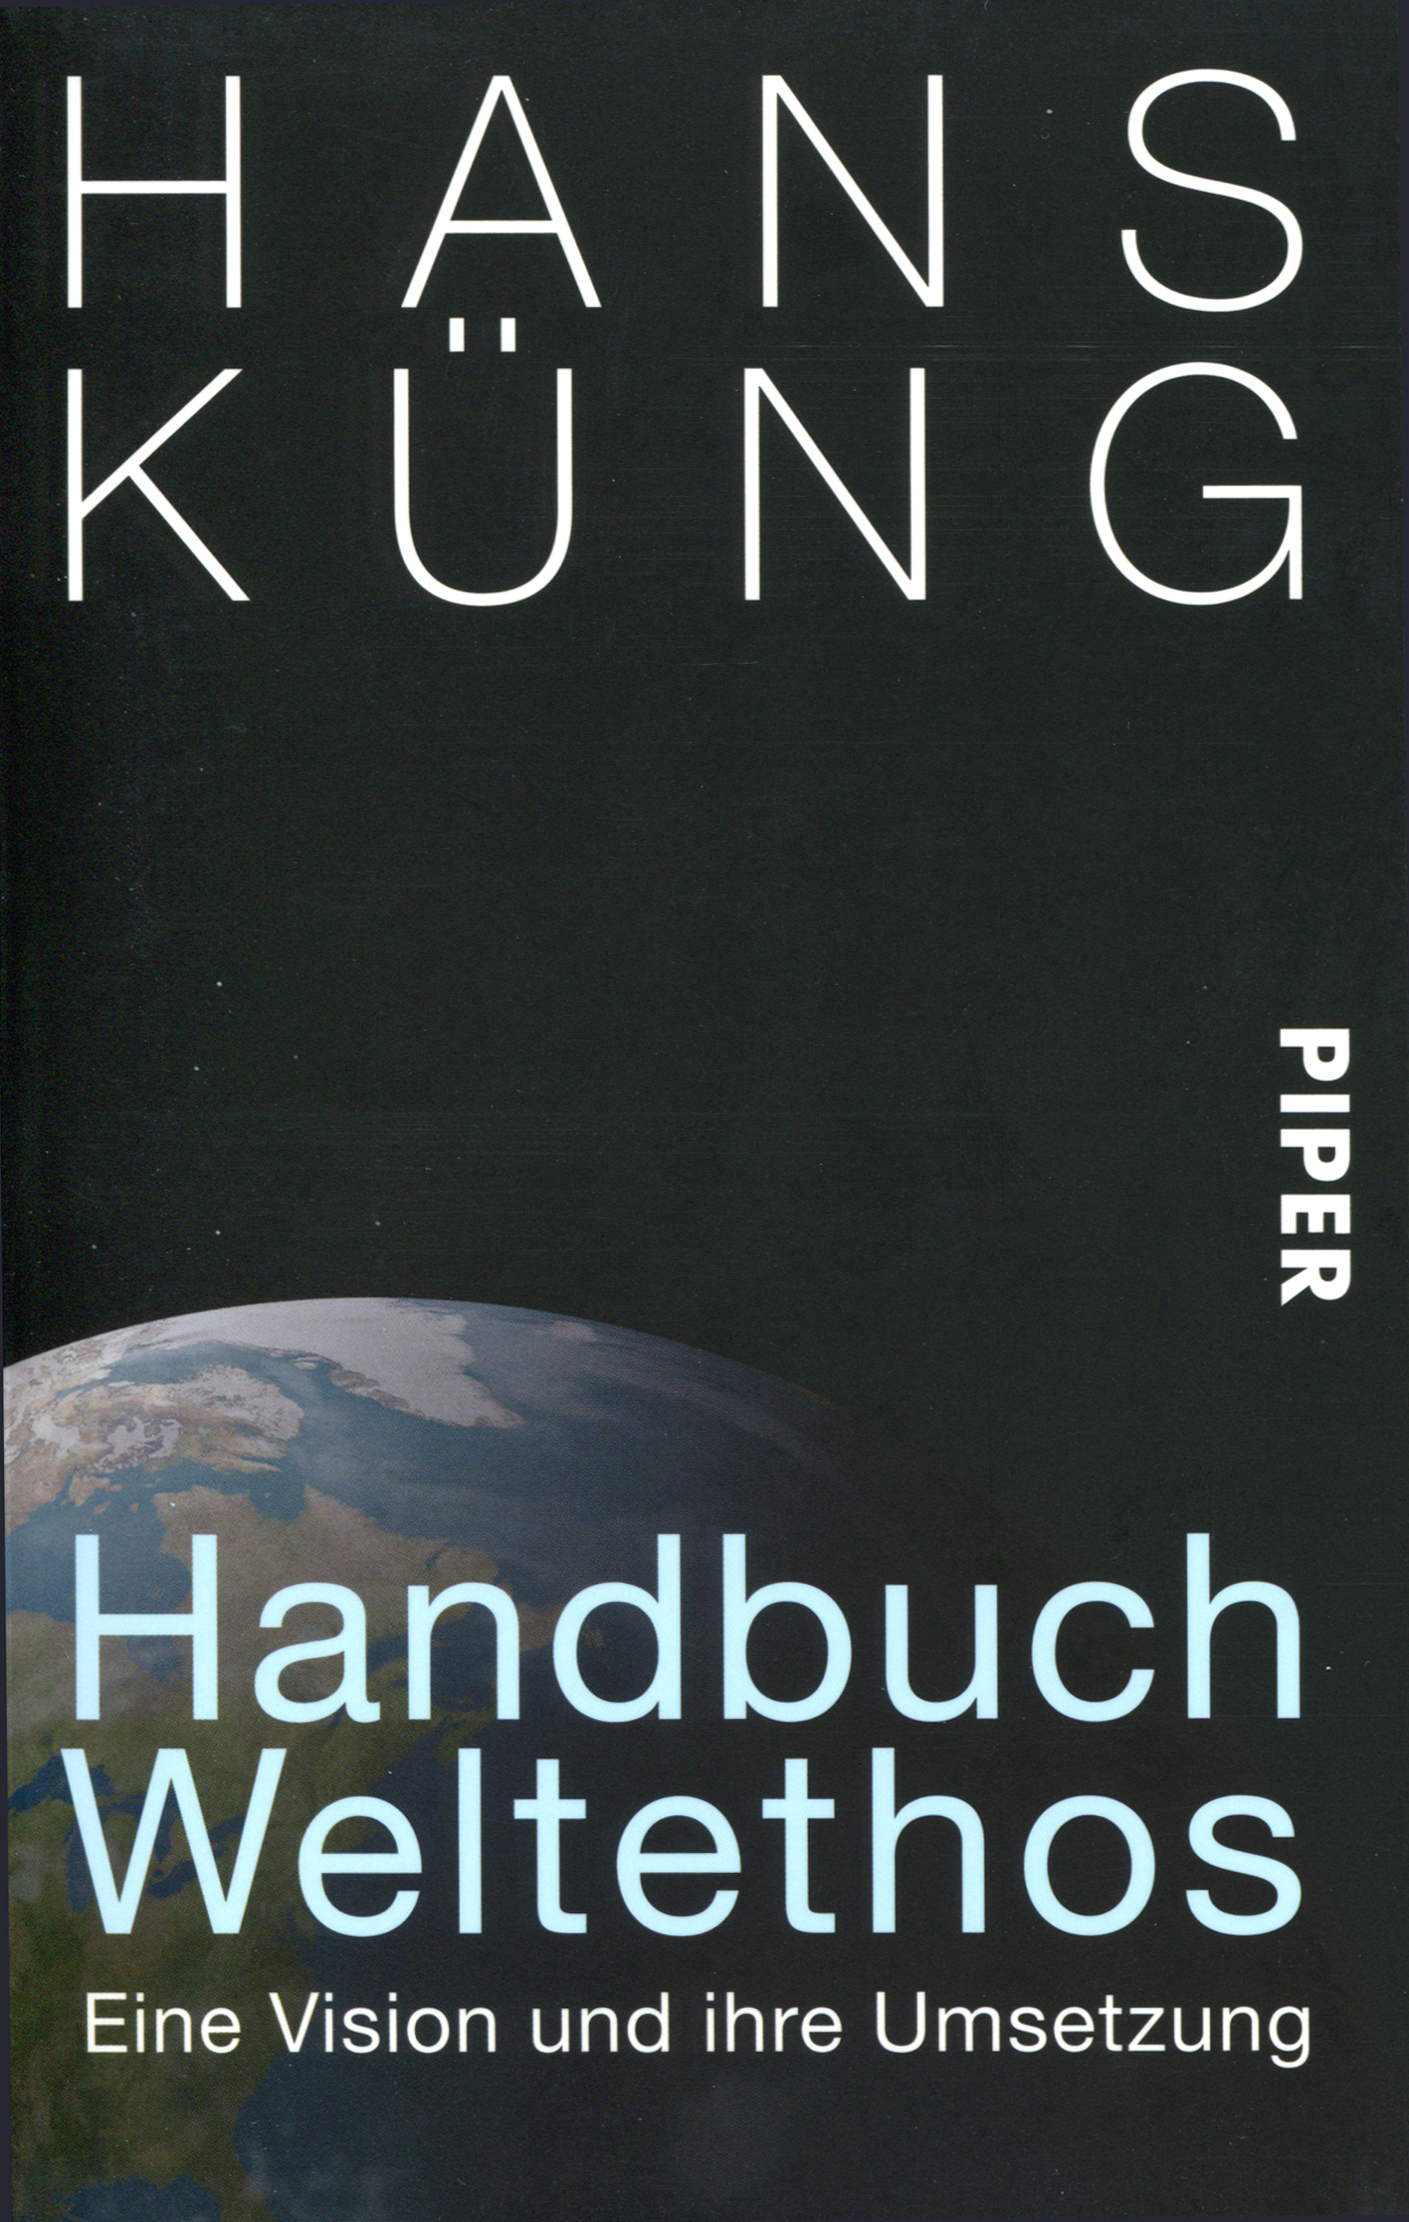 Das Bild zeigt die Vorderseite eines Buches mit der Aufschrift „Hans Küng, Handbuch Weltethos, Eine Vision und ihre Umsetzung“.